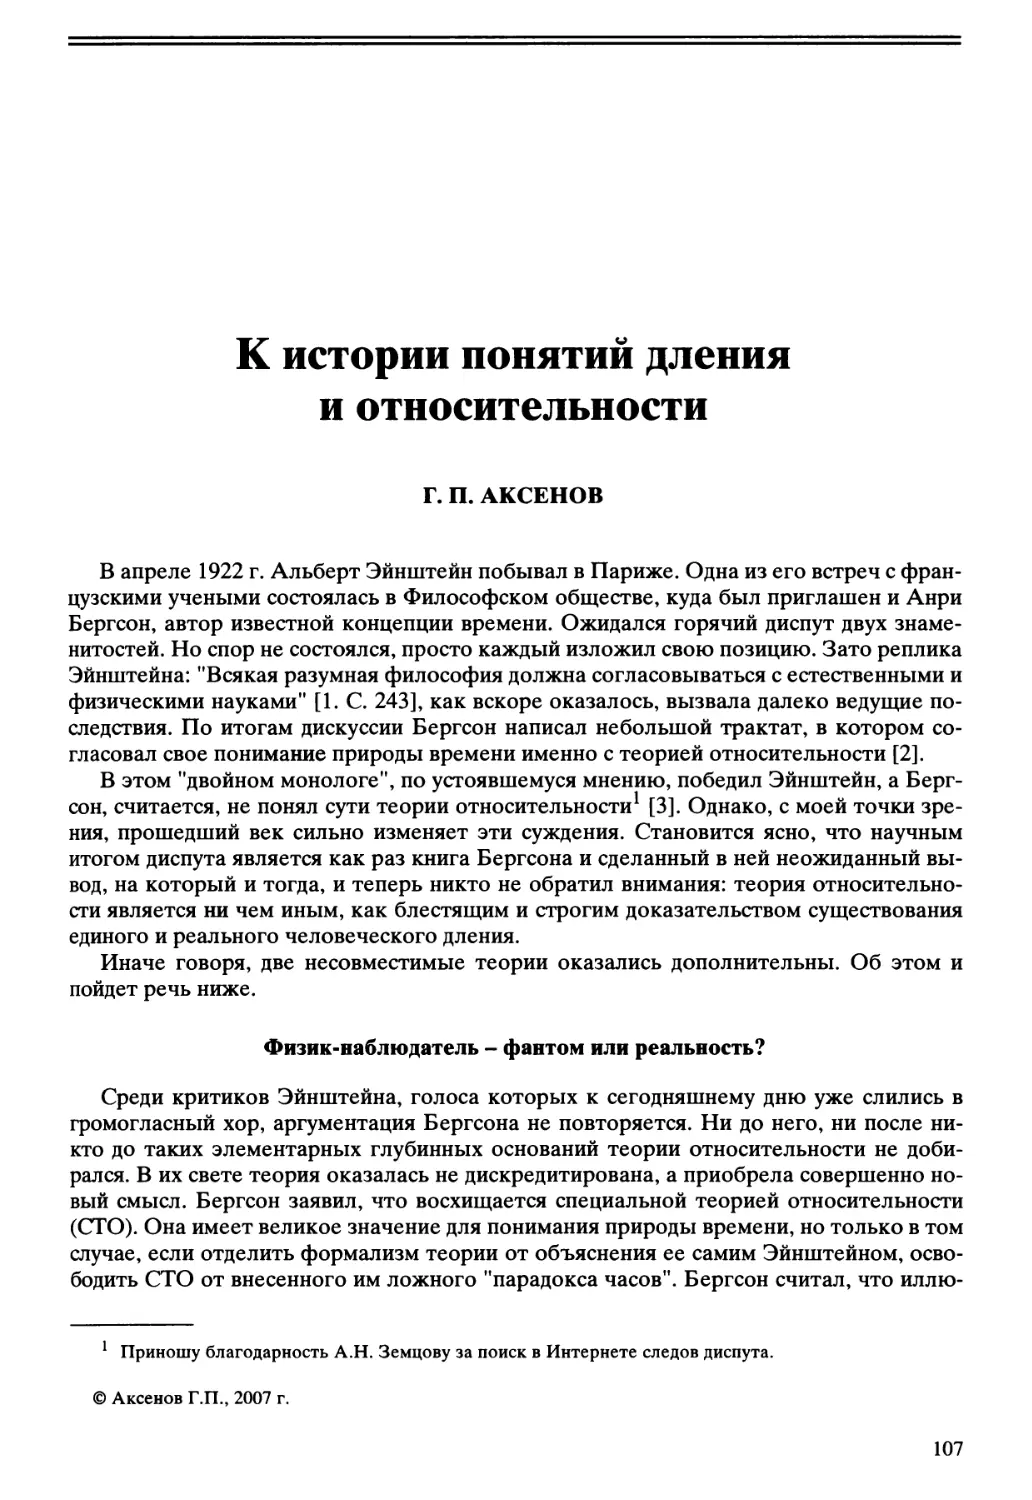 Г.П. Аксенов - К истории понятий дления и относительности